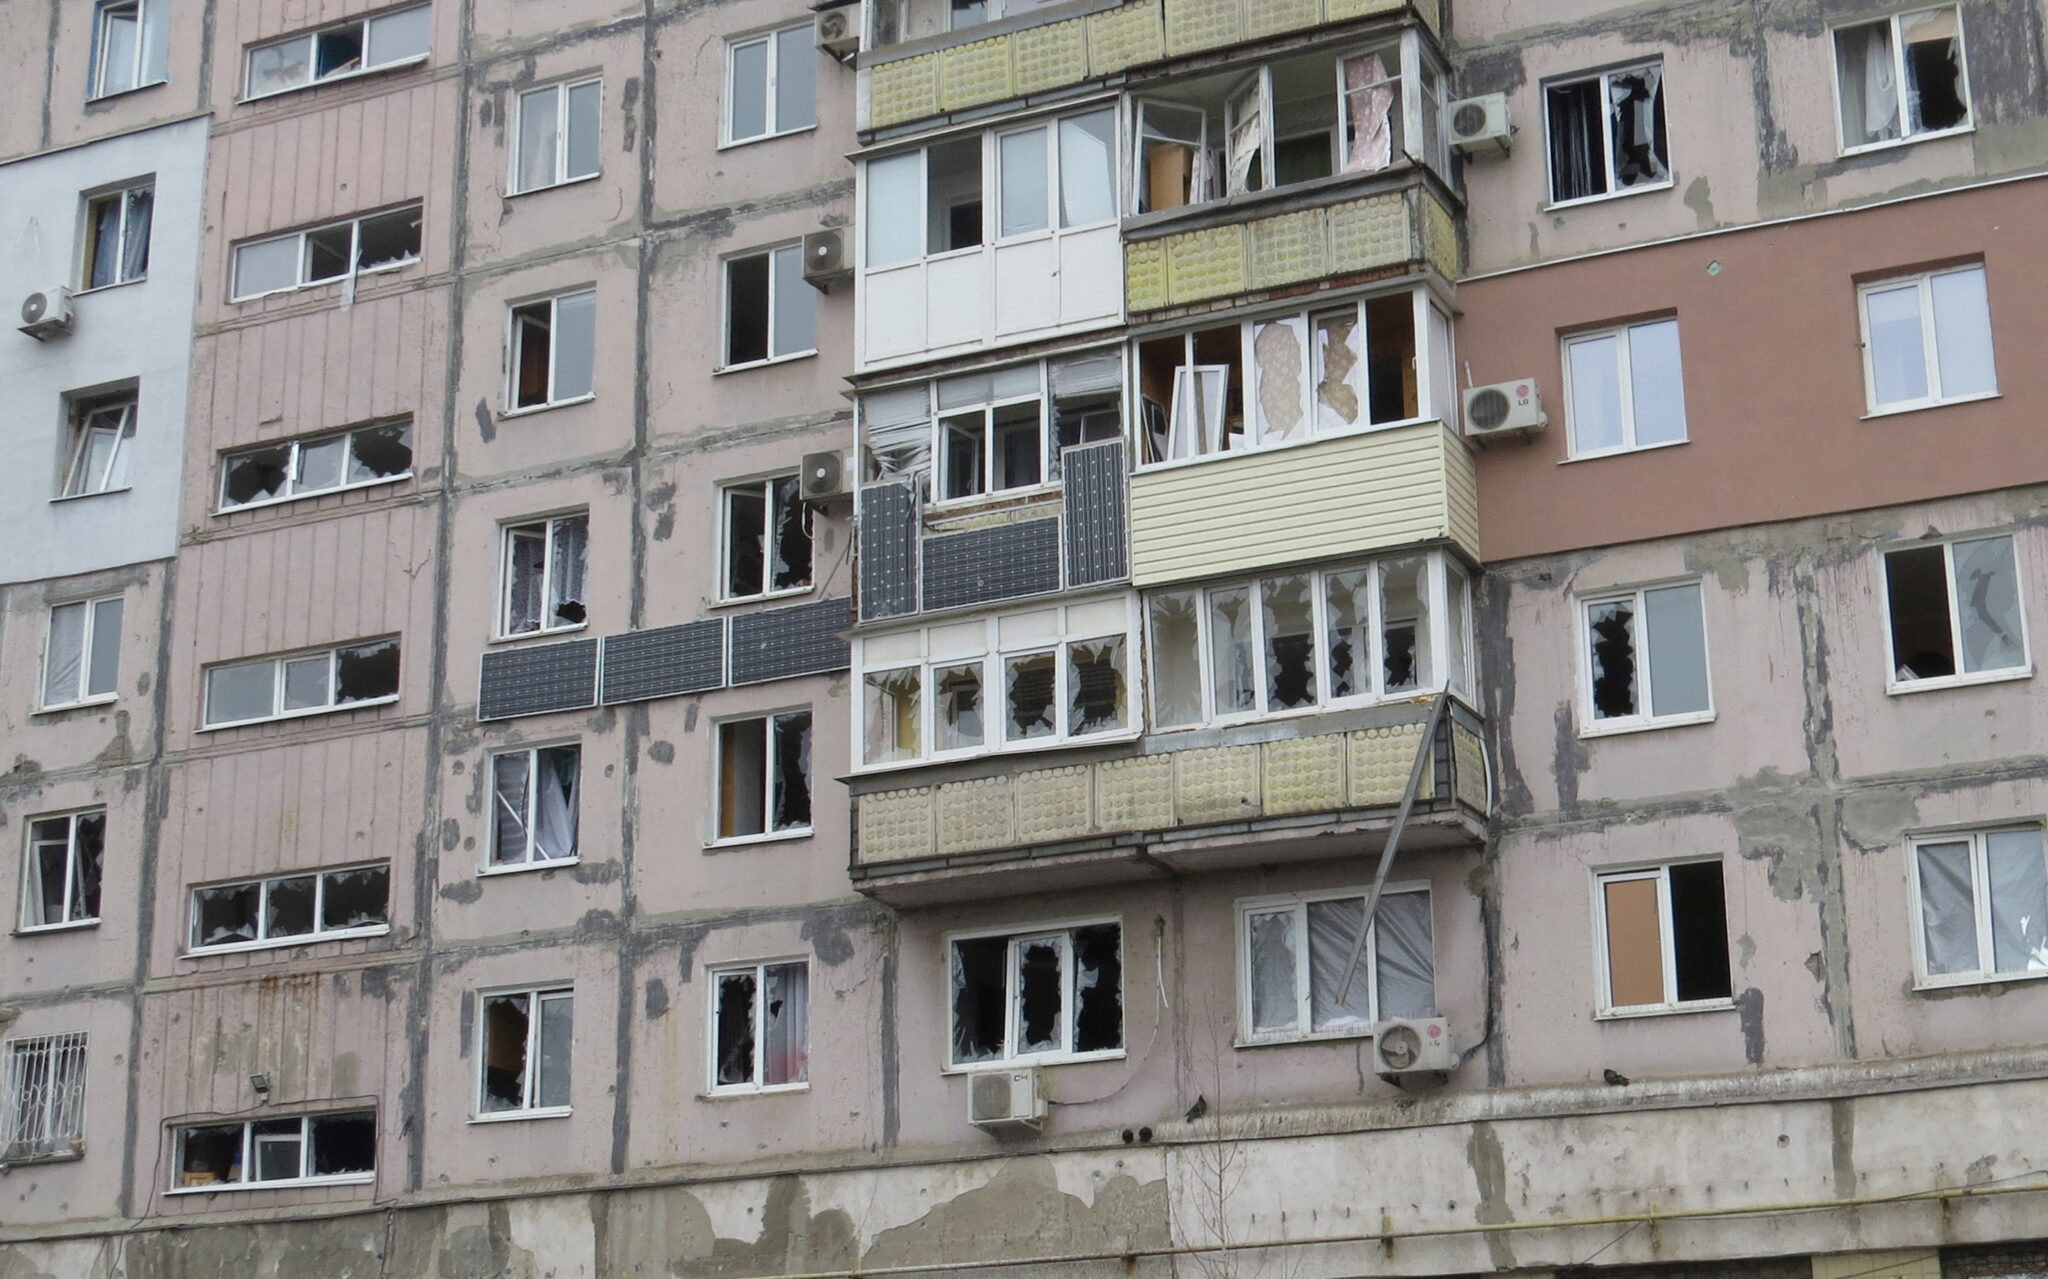 Жилой дом в Мариуполе, пострадавший от обстрелов. Фото Nikolay Ryabchenko/REUTERS/Scanpix/LETA